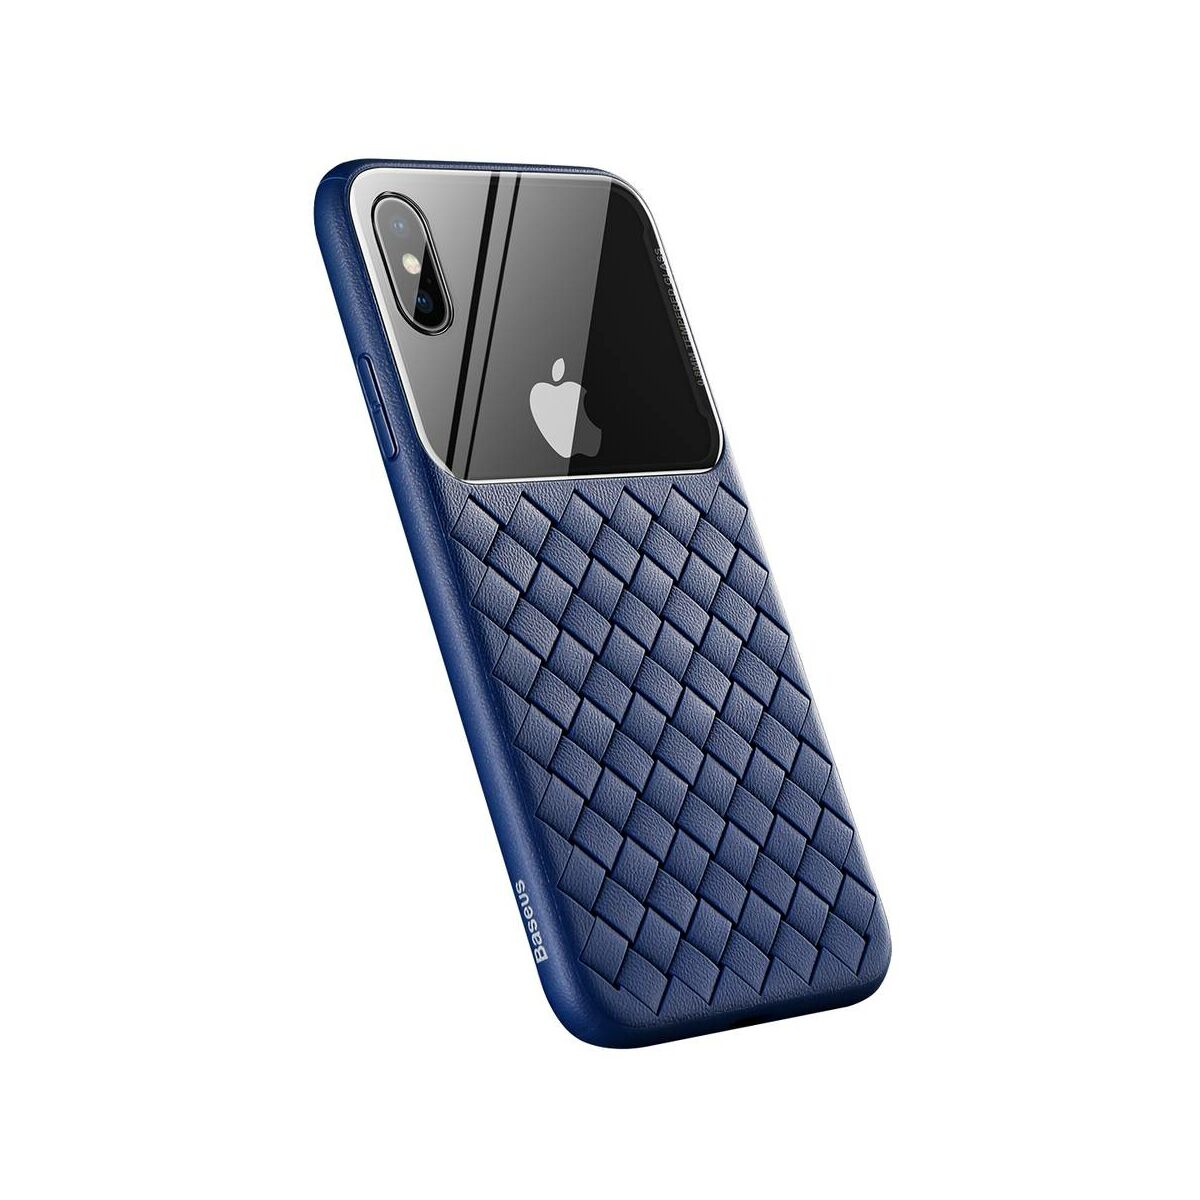 Kép 3/8 - Baseus iPhone XS üveg & tok, BV Weaving, kék (WIAPIPH58-BL03)